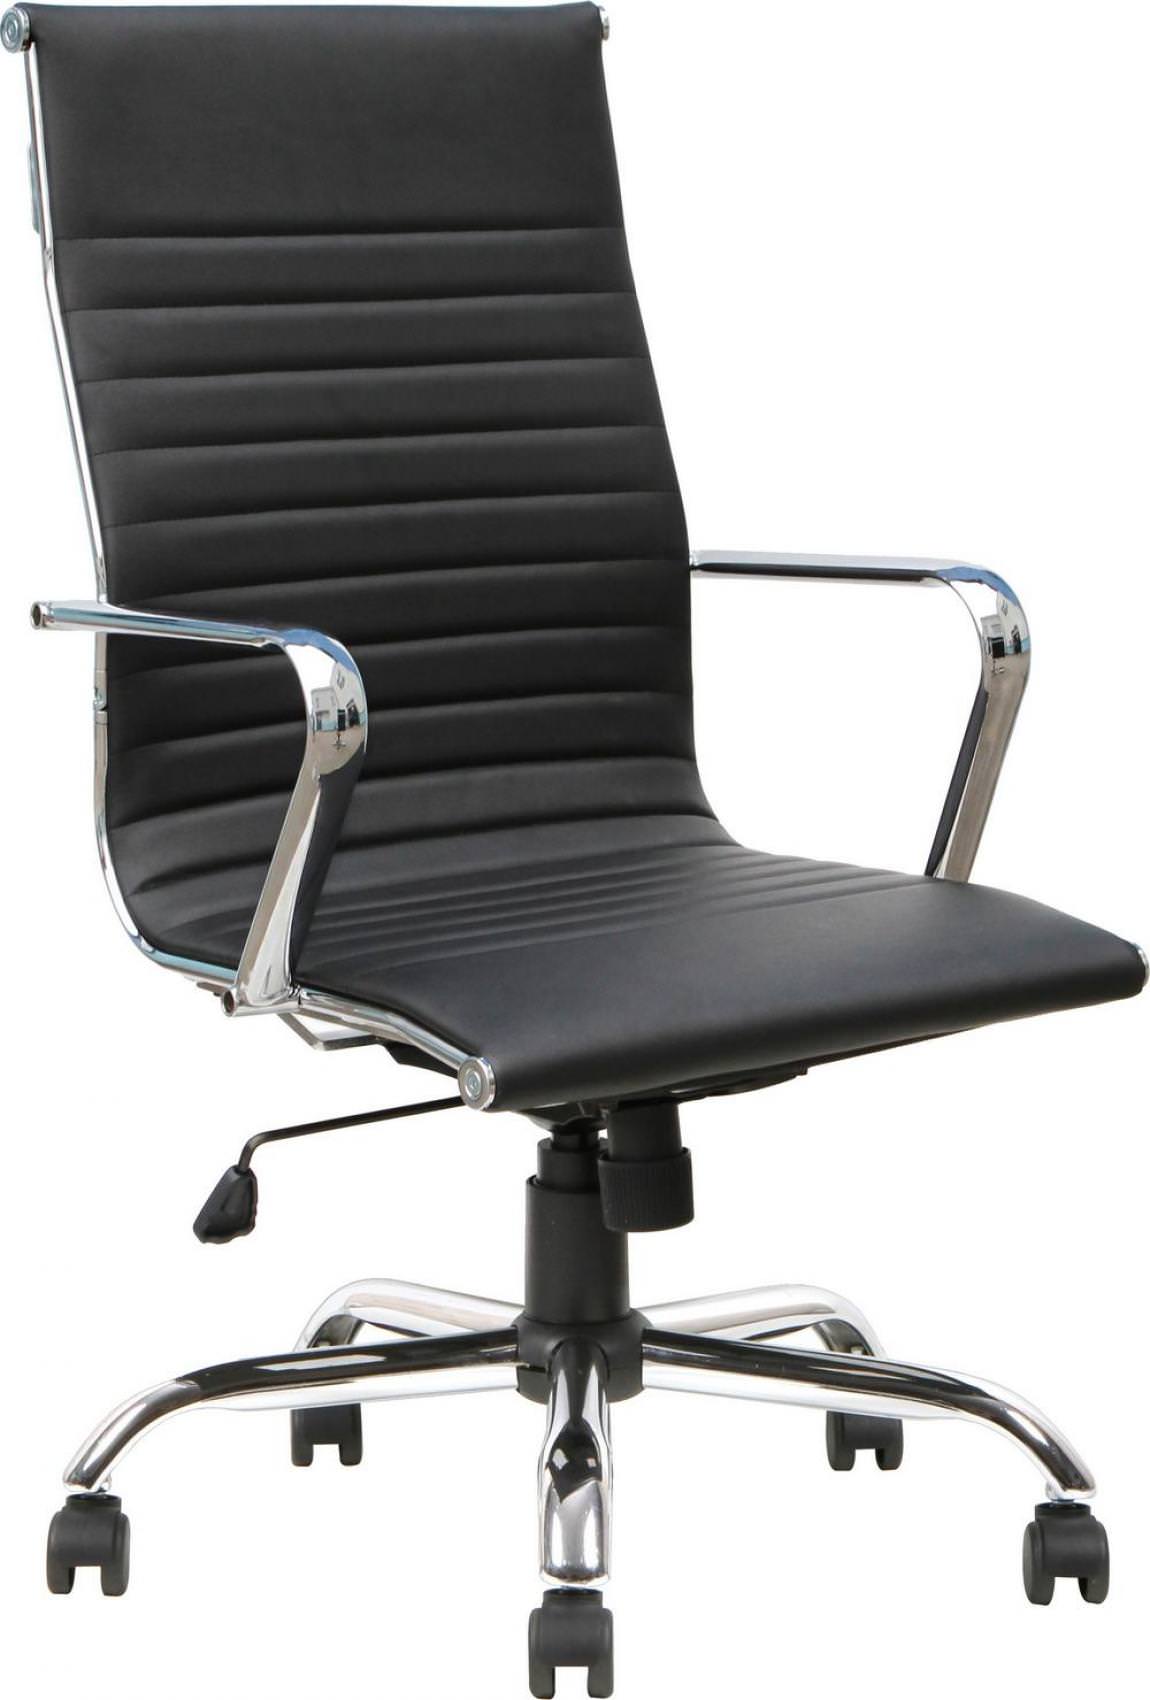 High-Back Modern Swivel Tilt Conference Room Chair